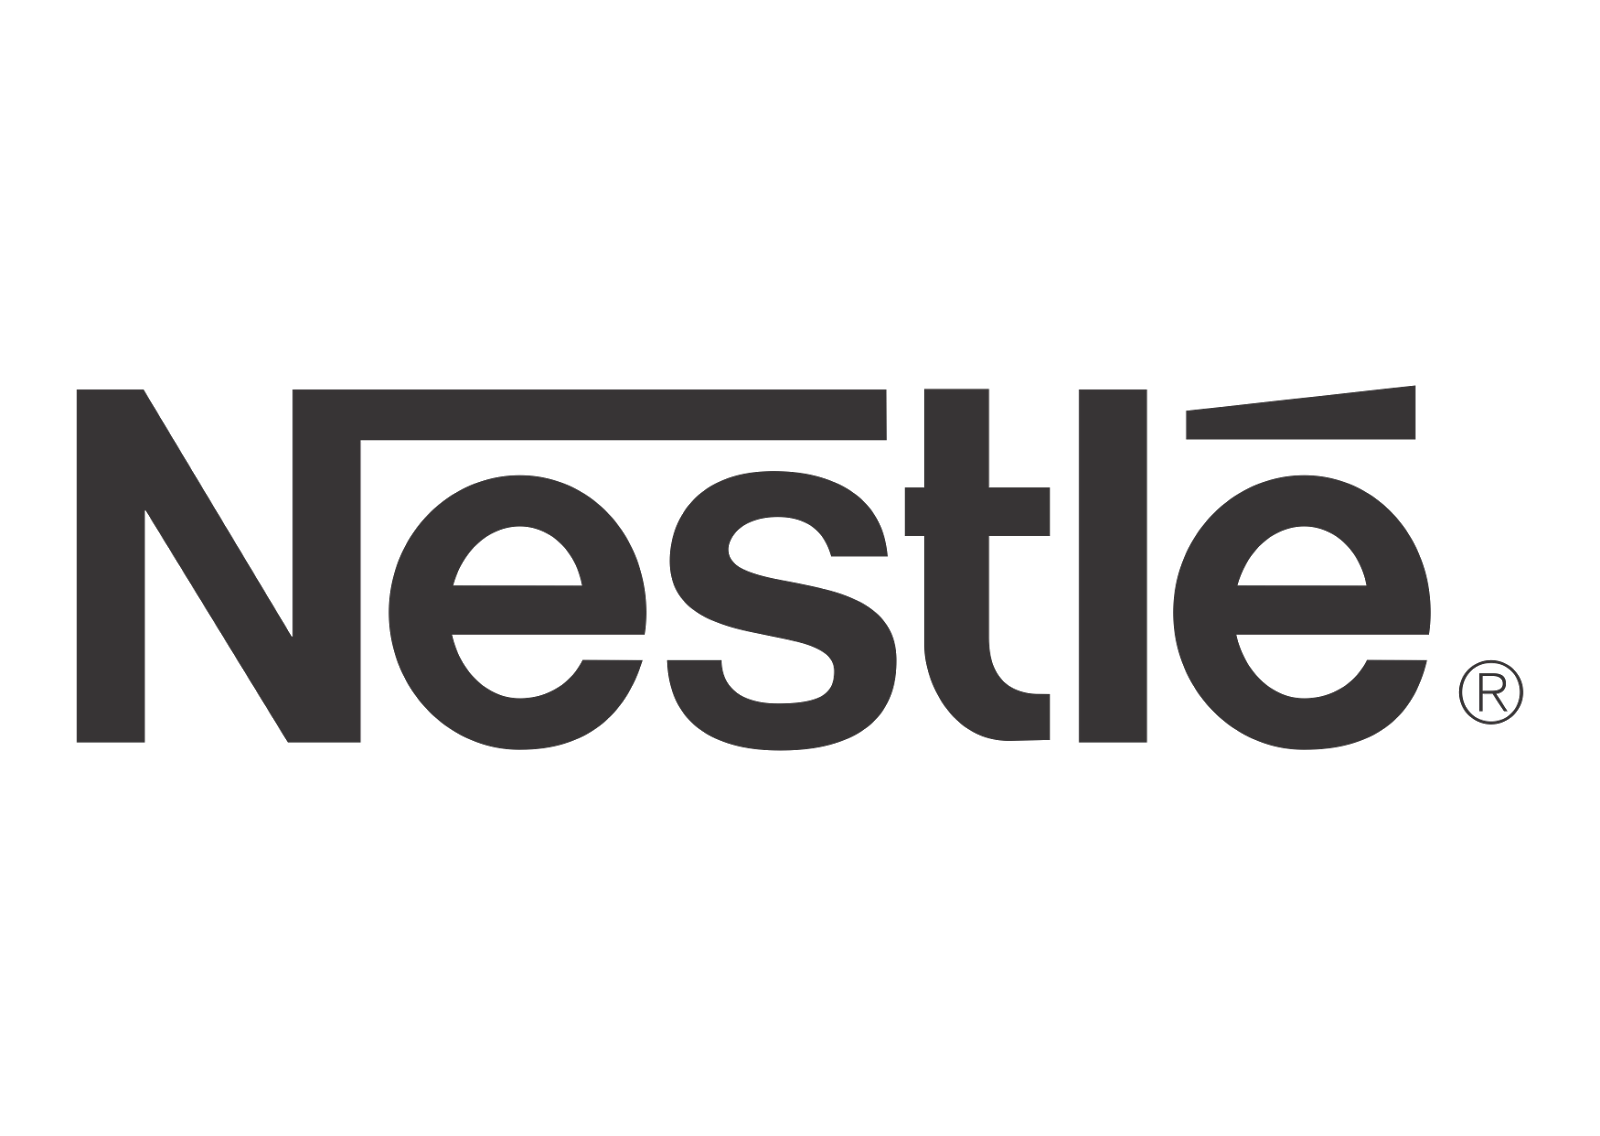 Logo of Nestlé